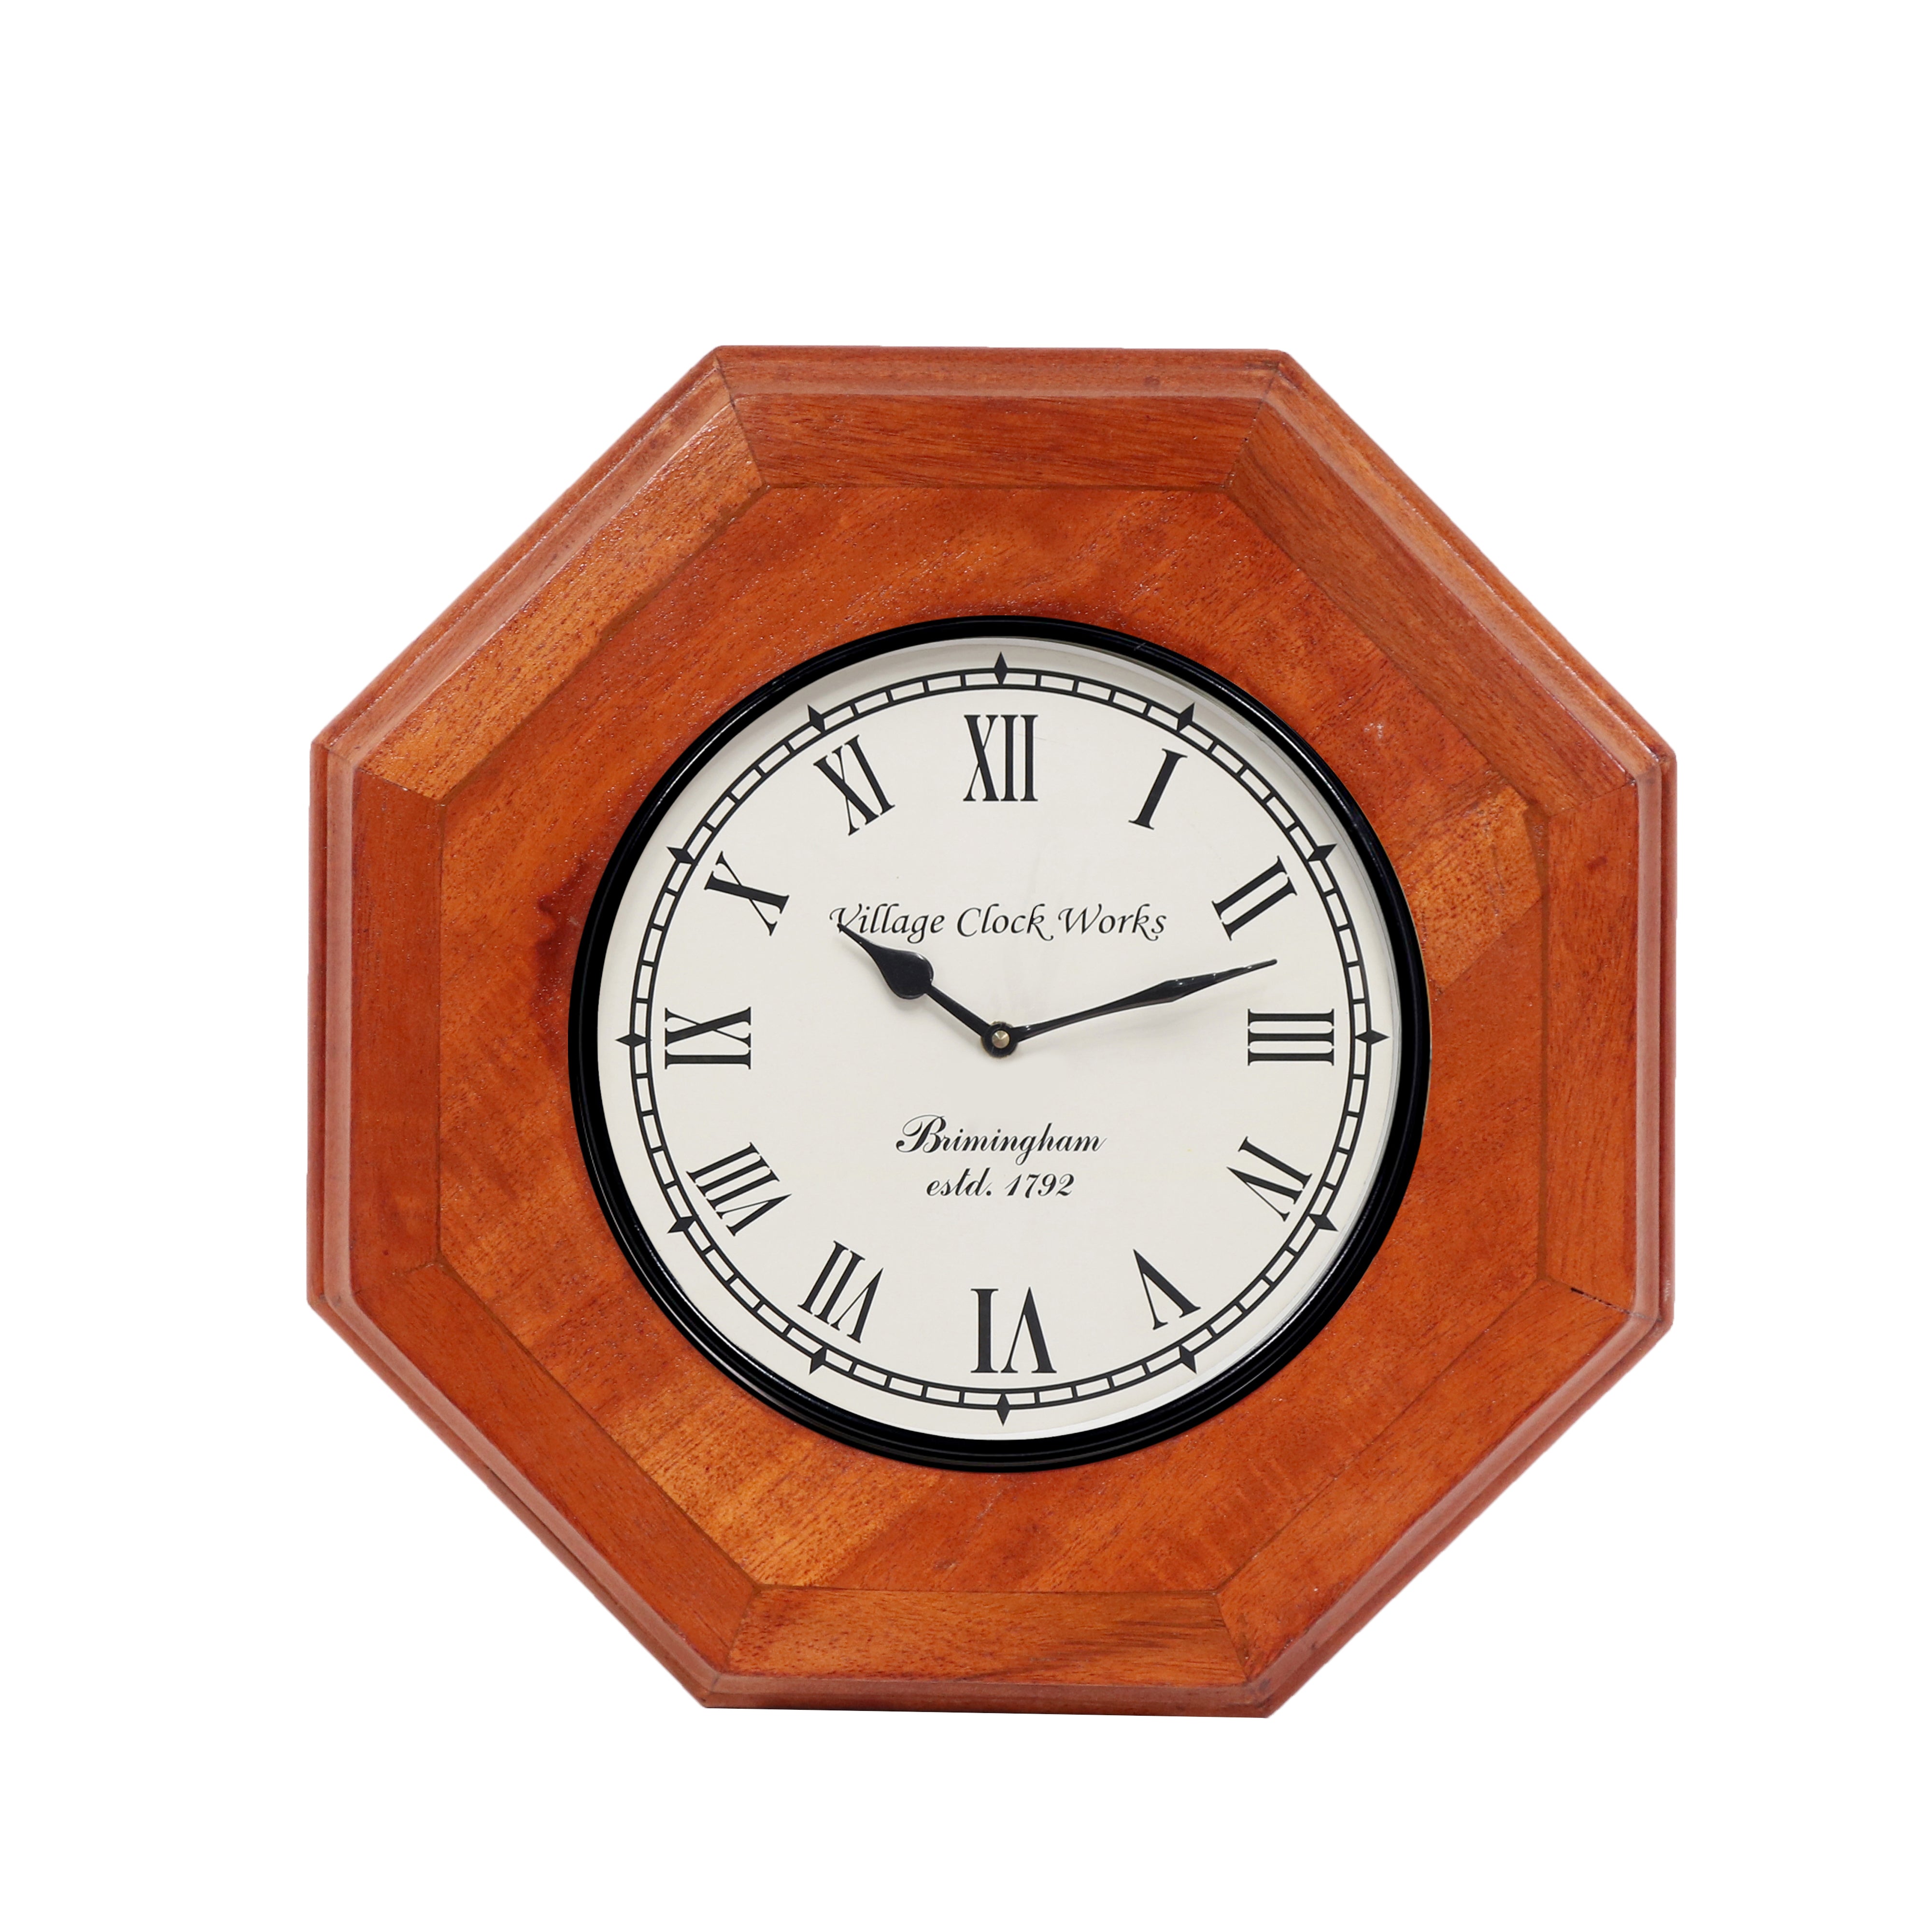 Natural solid wood Clock Clock